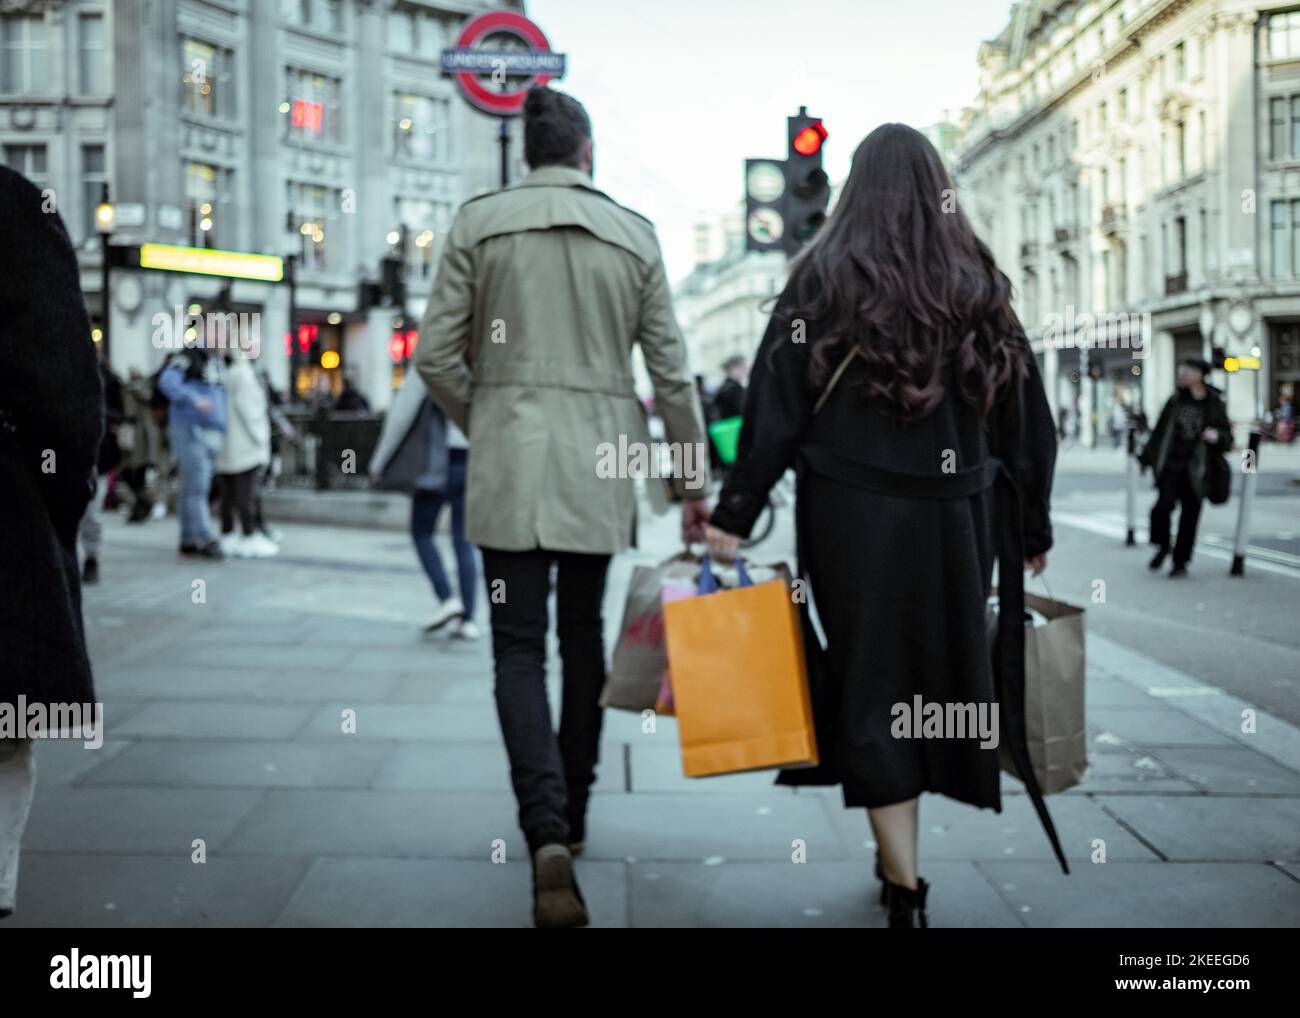 Londres - novembre 2022 : les acheteurs sur Oxford Street, une rue historique et une destination de détail Banque D'Images